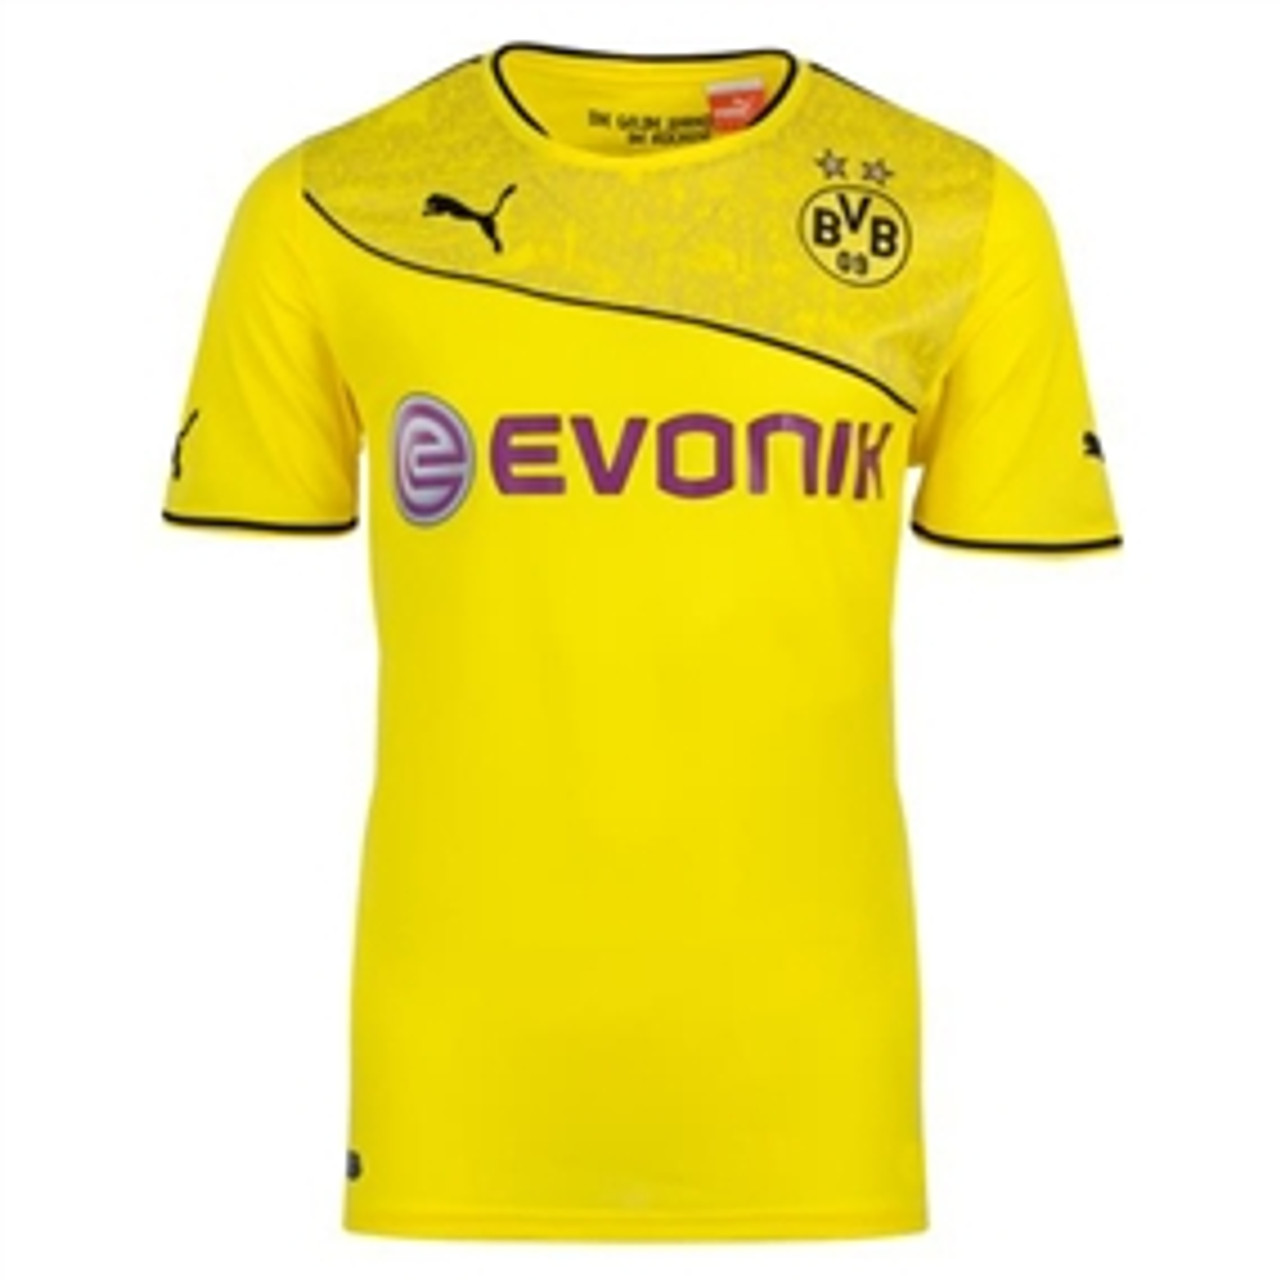 dortmund yellow jersey